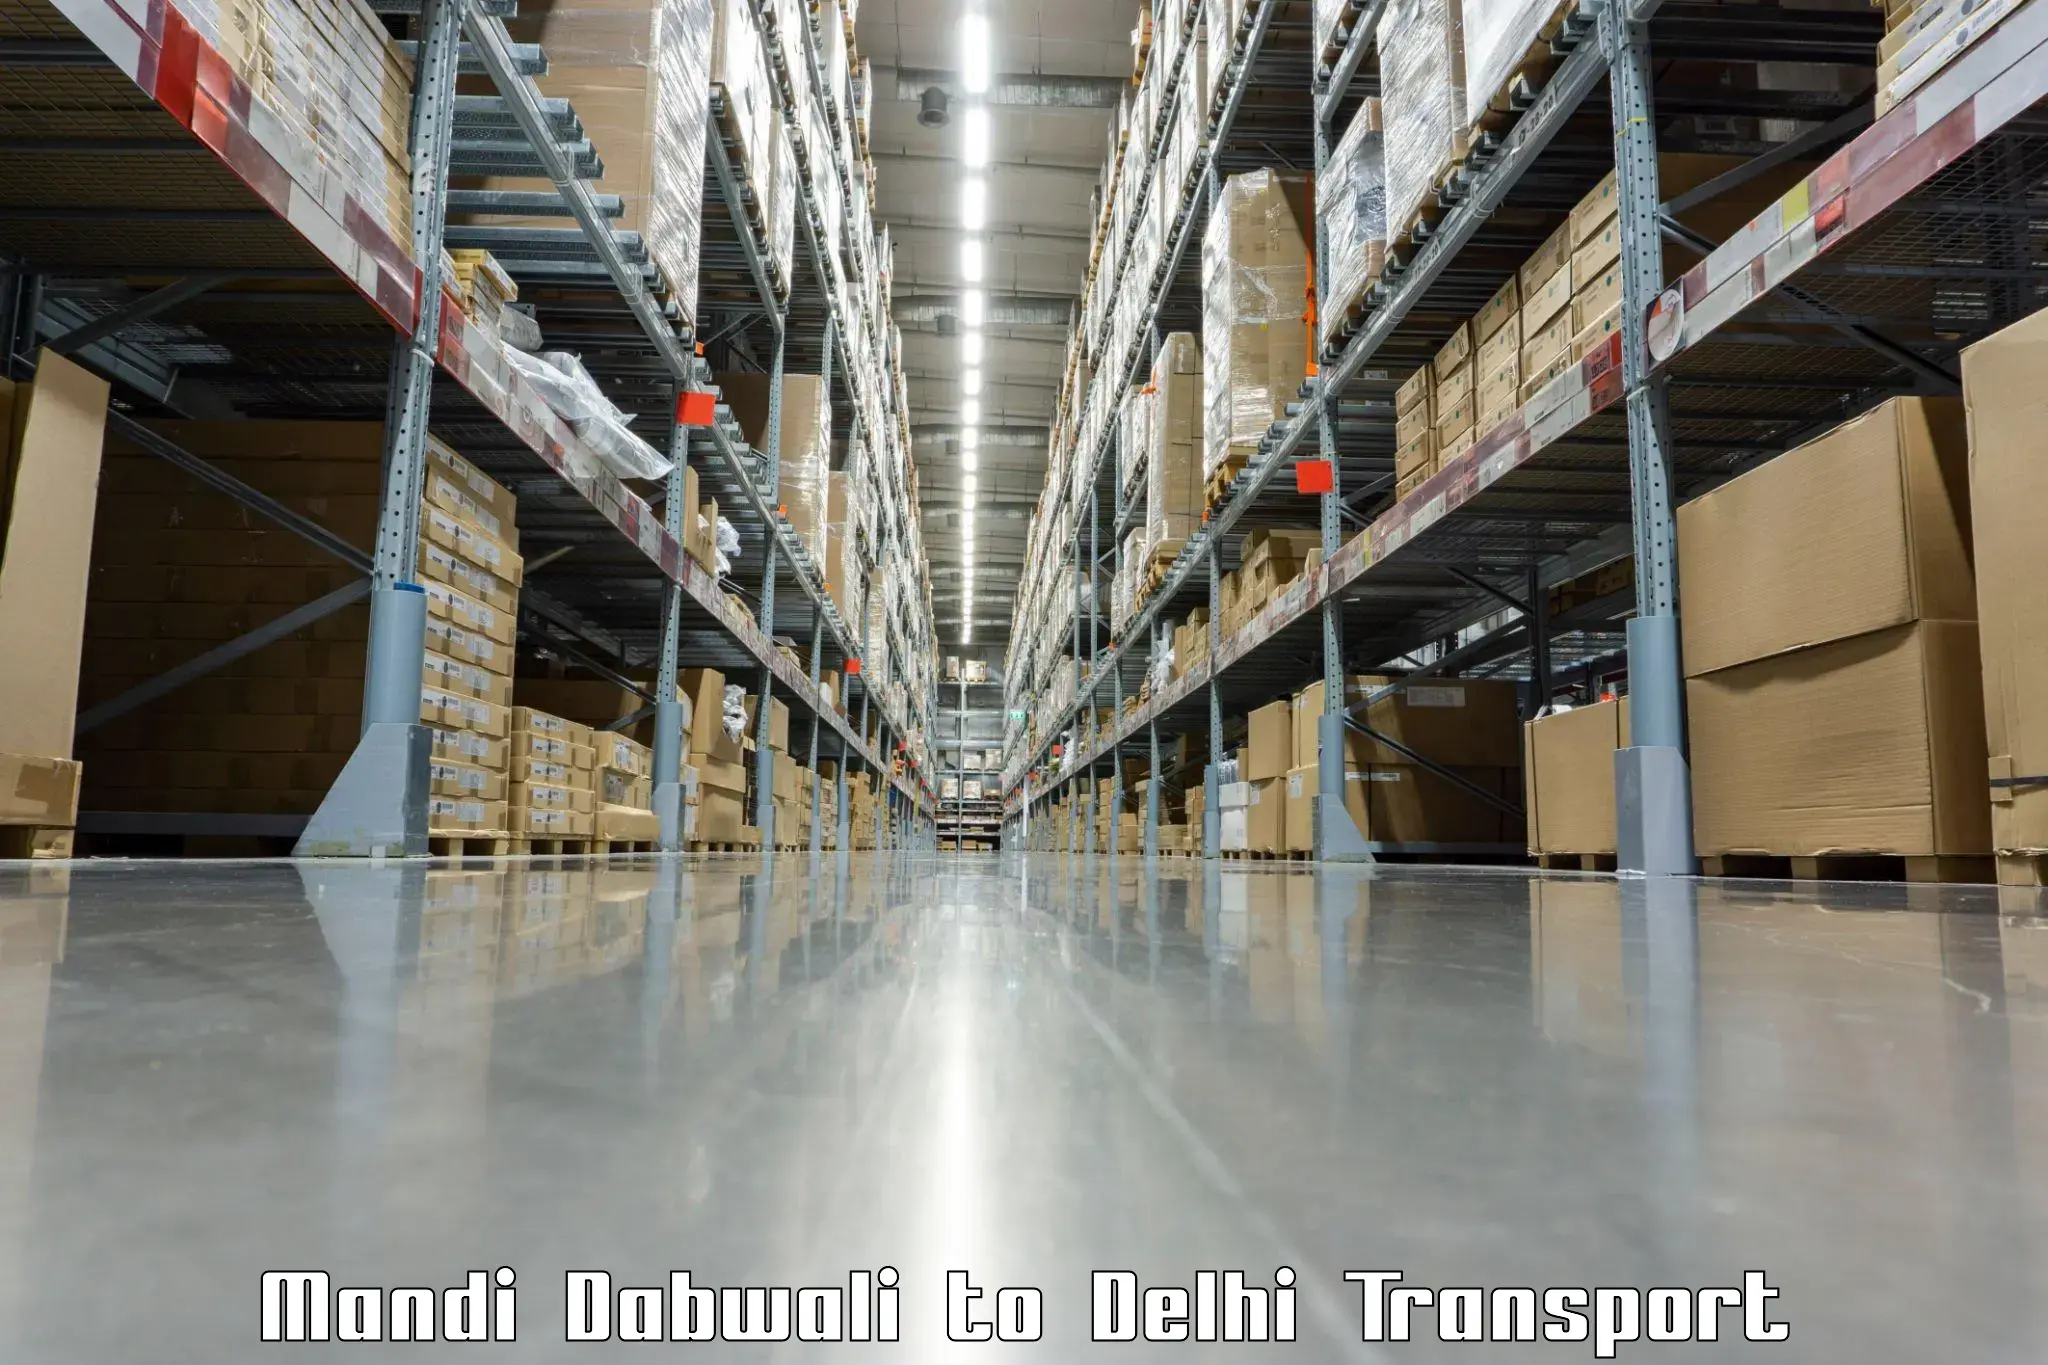 Parcel transport services Mandi Dabwali to Jamia Hamdard New Delhi